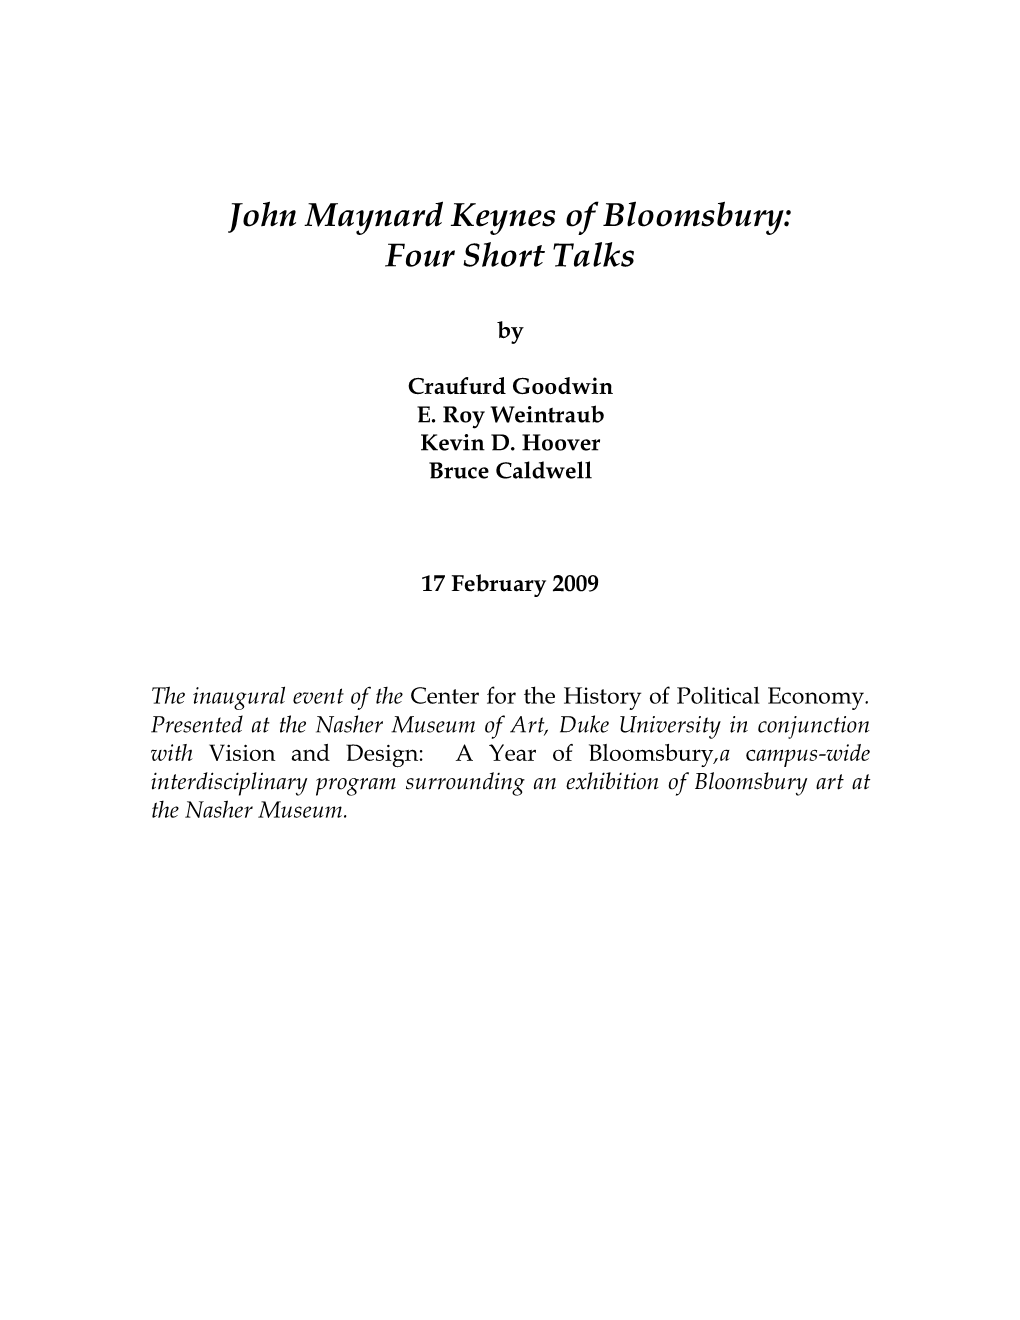 John Maynard Keynes of Bloomsbury: Four Short Talks